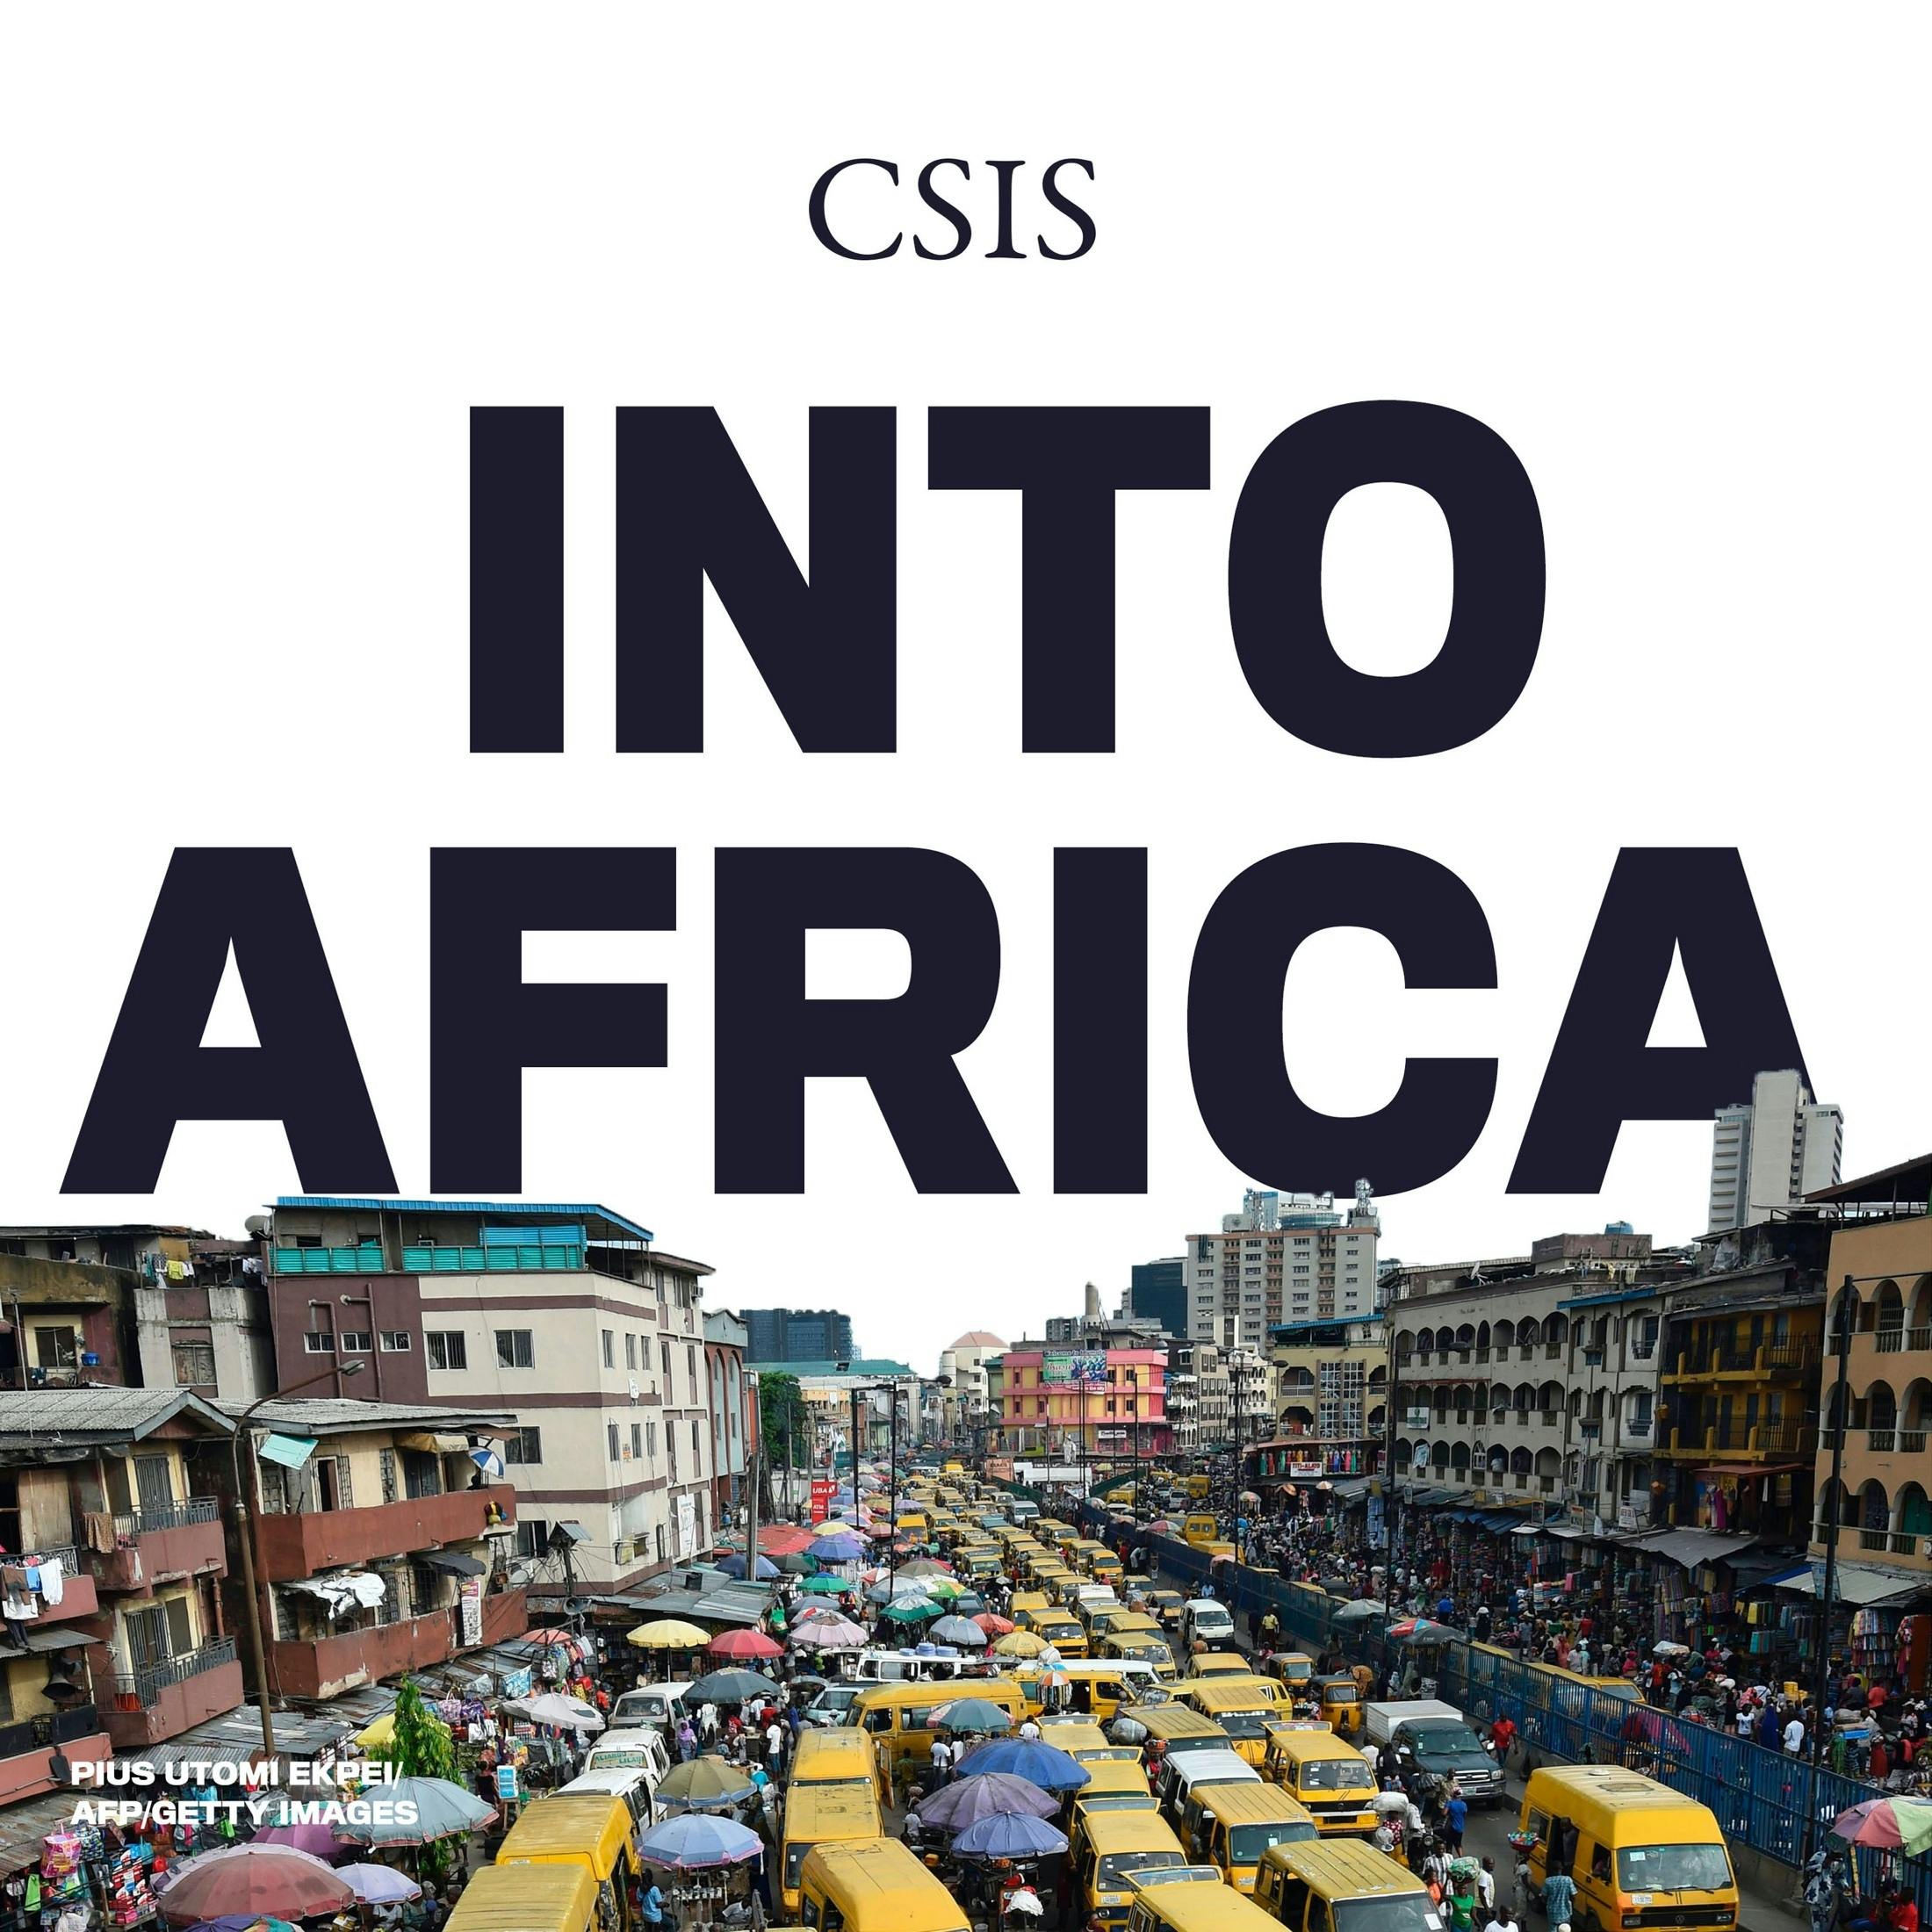 Tony Elumelu and Why “Africapitalism” Works